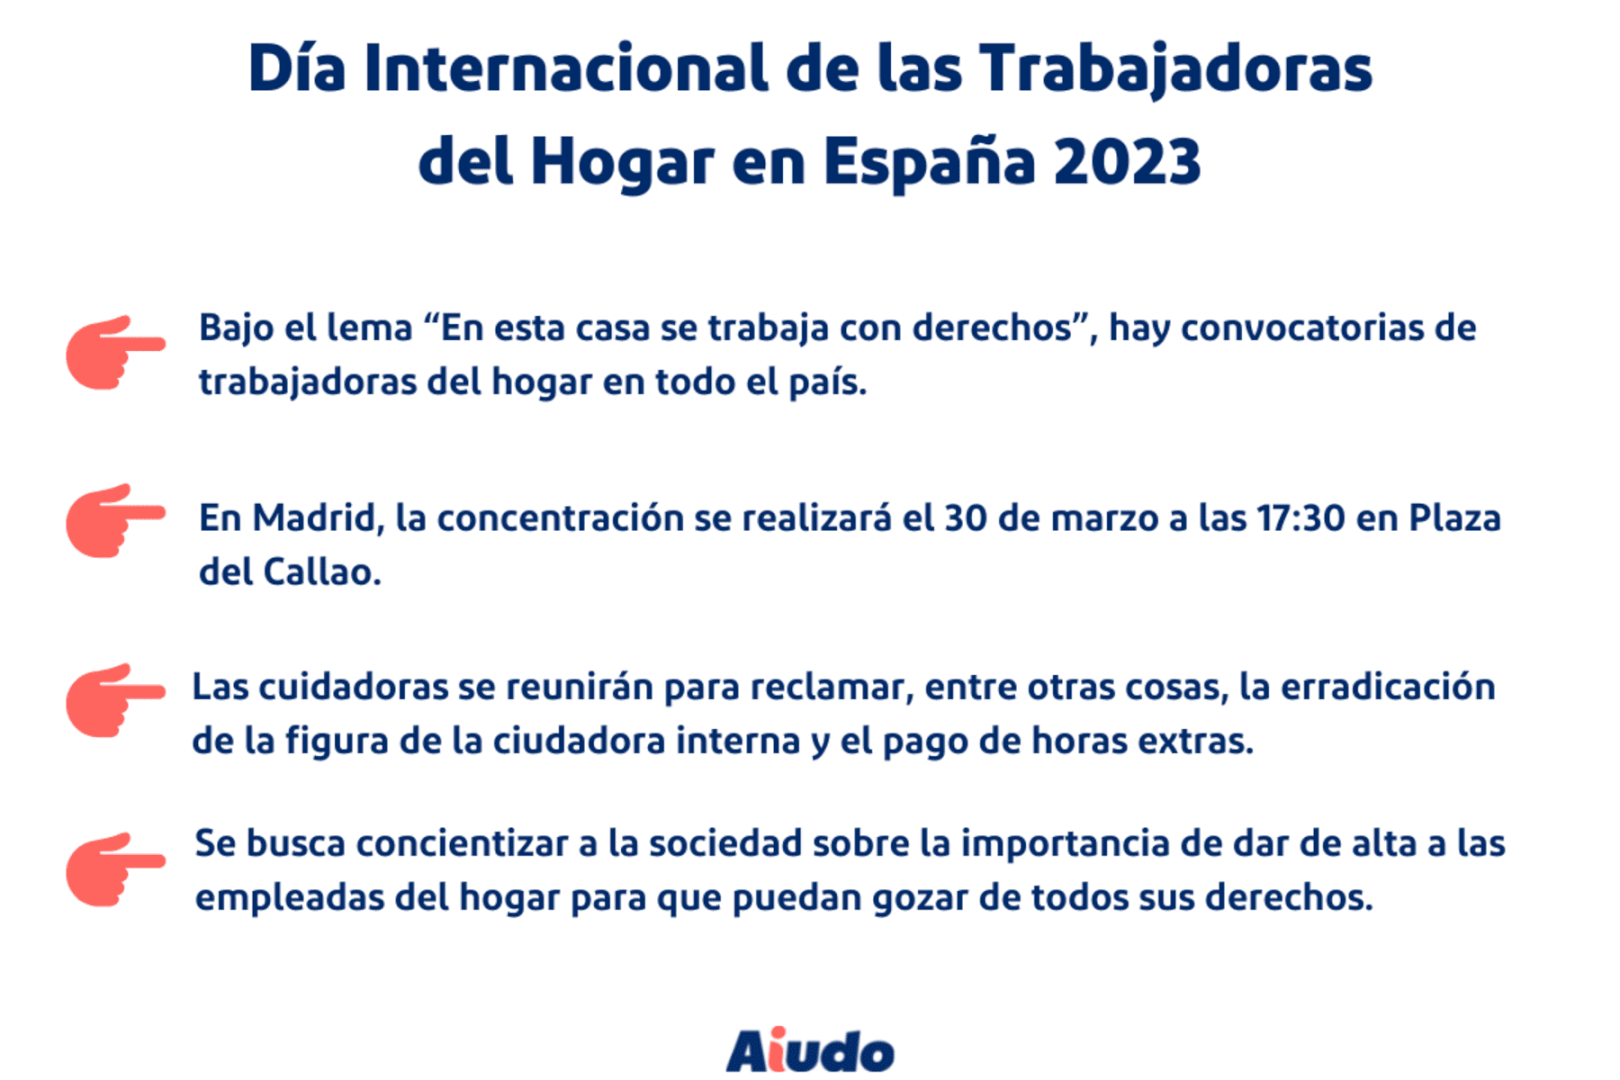 Infografía explicando los principales puntos del Día Internacional de las Trabajadoras del Hogar en España 2023, como por ejemplo las convocatorias de las trabajadoras del hogar en Madrid.